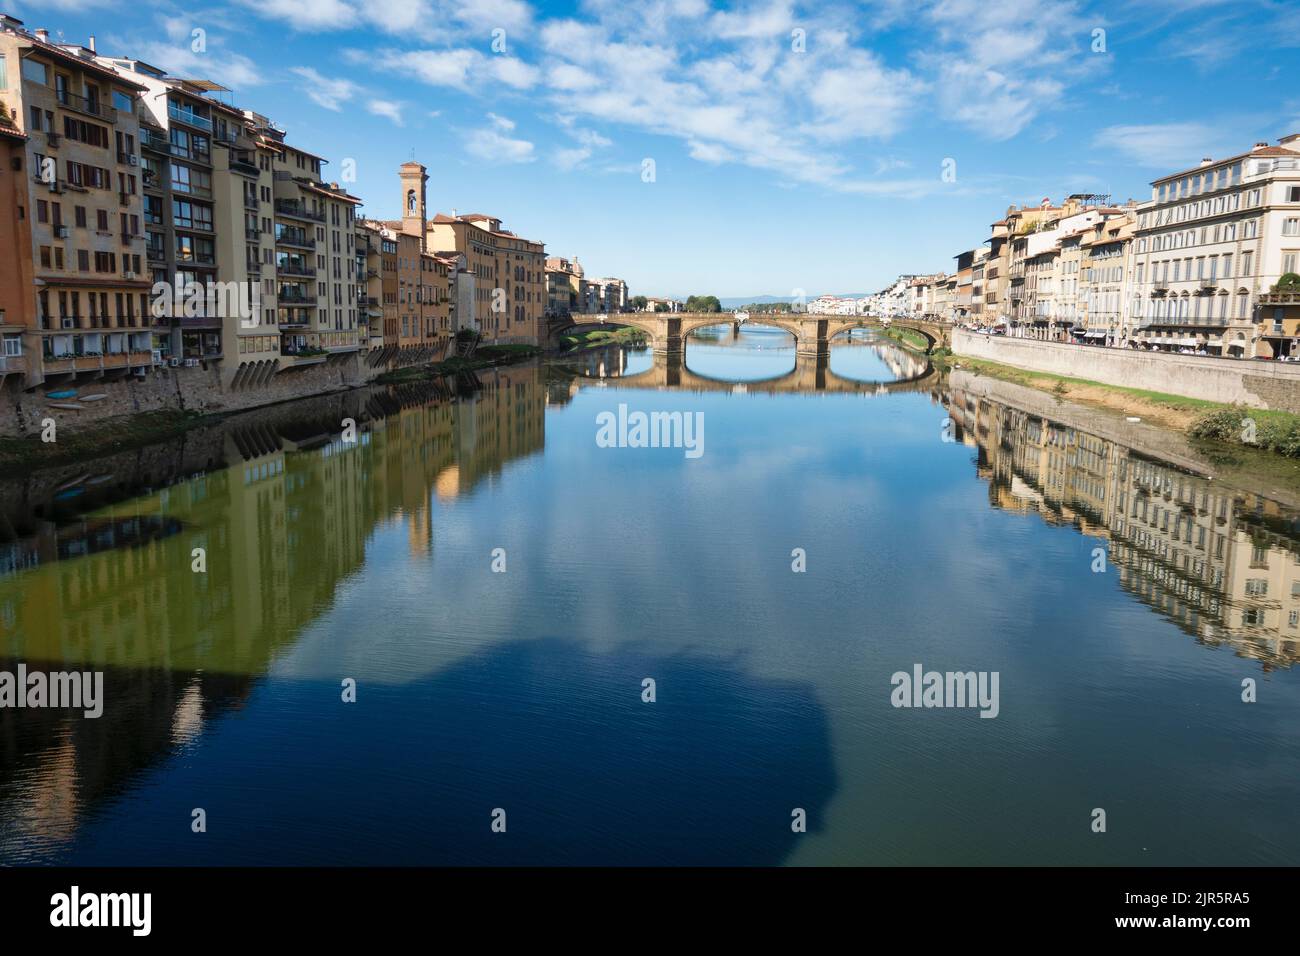 Der Fluss Arno fließt durch die Stadt Florenz, Italien. Stockfoto